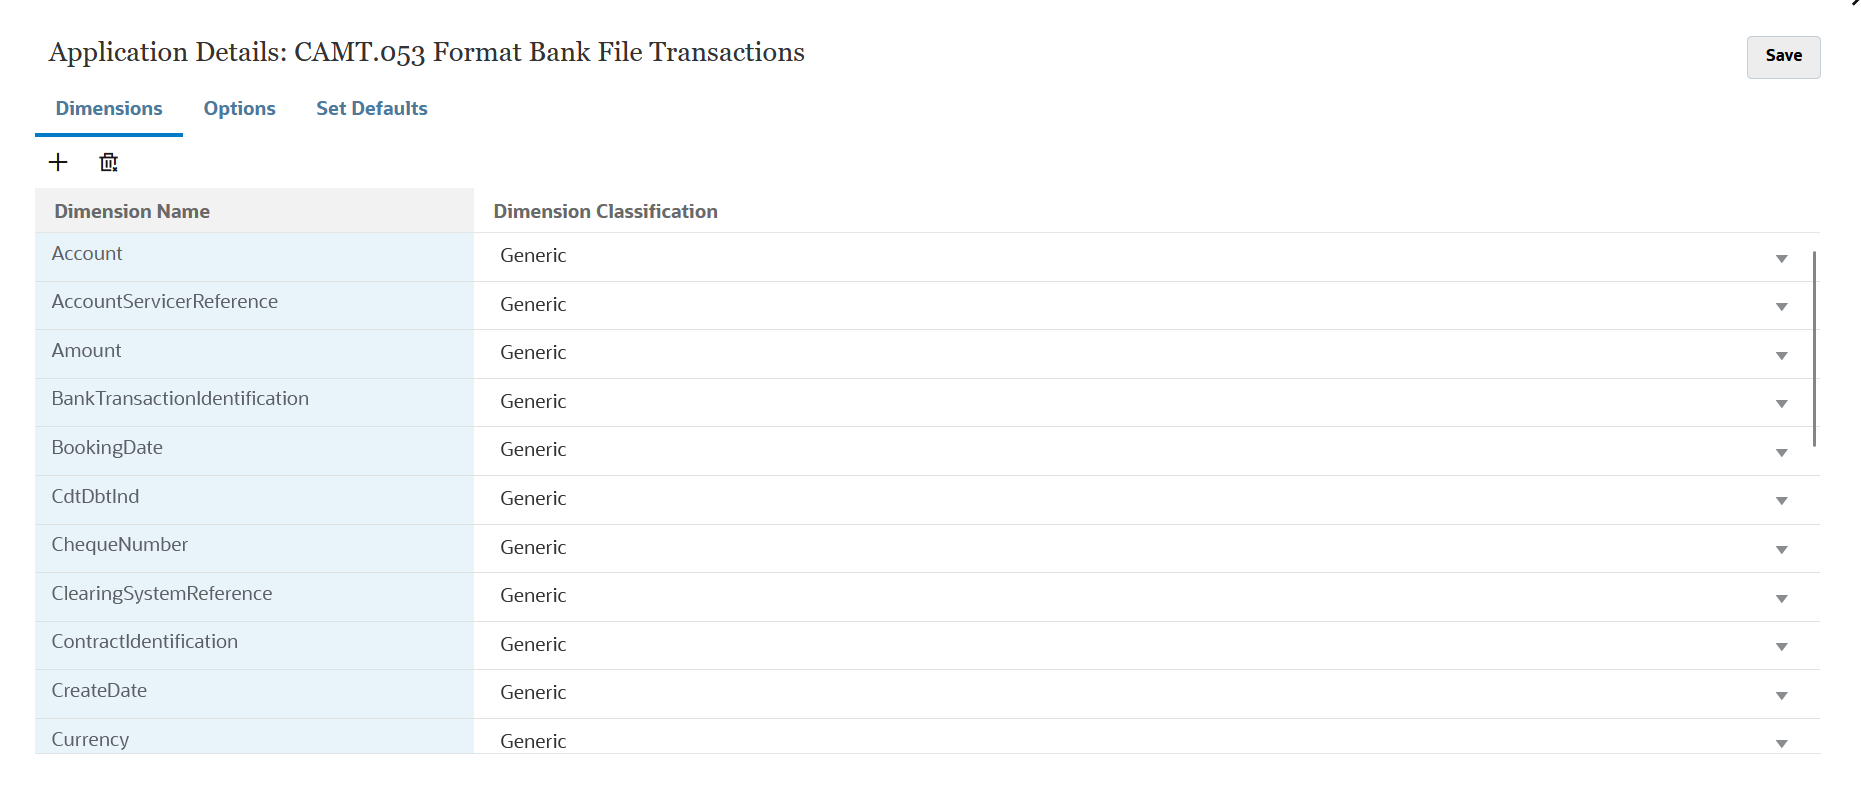 Das Bild zeigt die Dimensionen für eine Anwendung mit Transaktionen mit Bankdateien im CAMT.053-Format.